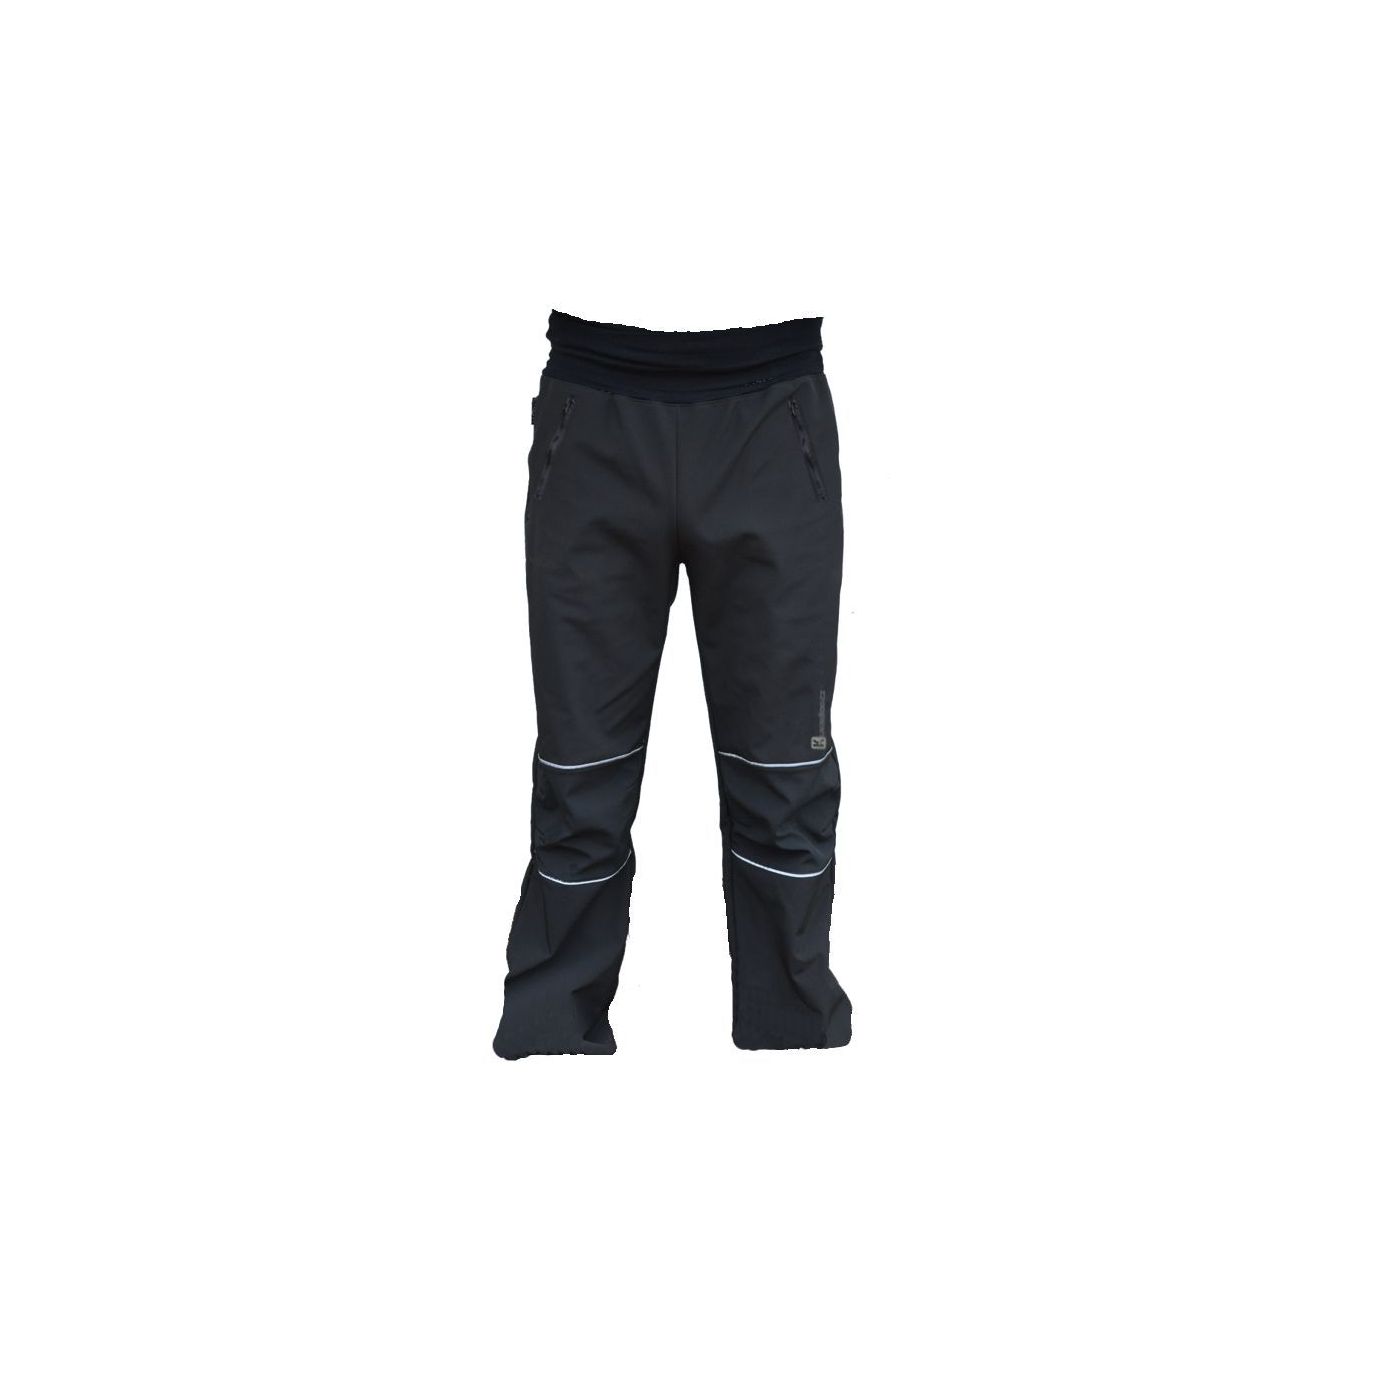 Levně Pánské softshellové kalhoty - černé /30.000mm, 15.000g/m2